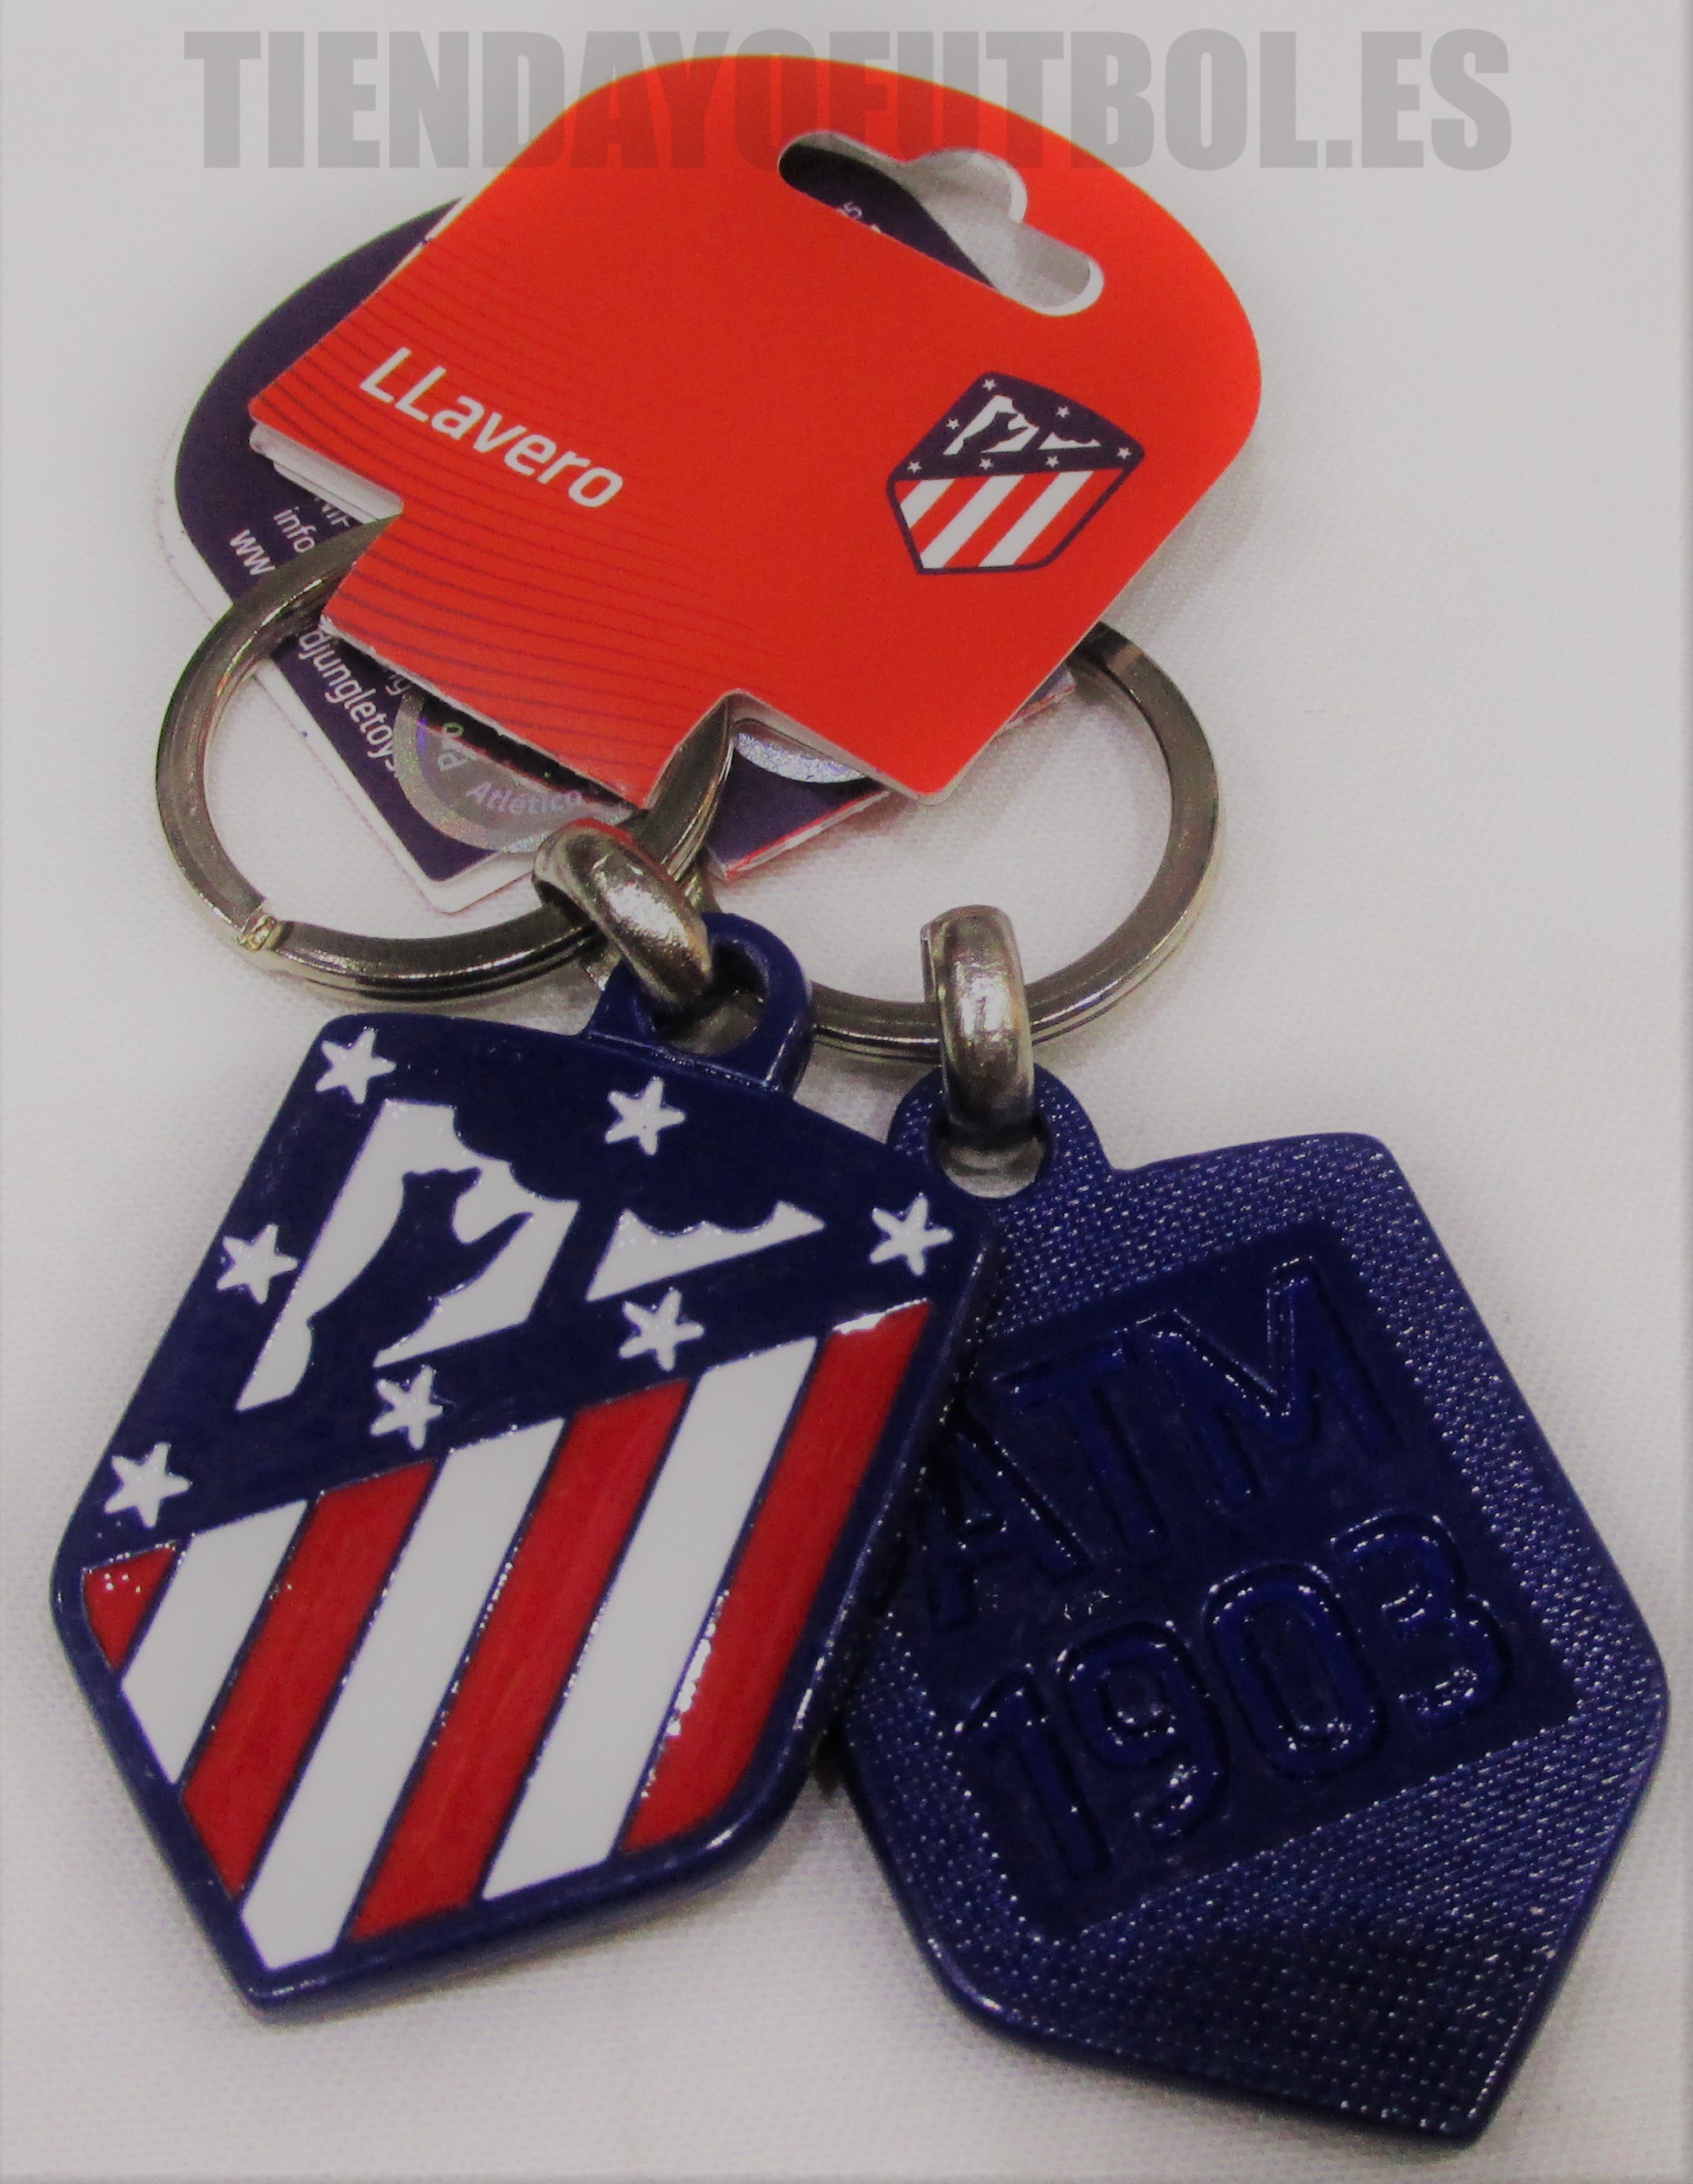 Atlético Madrid llavero-abridor oficial, Abridor-Llavero Atlético de Madrid